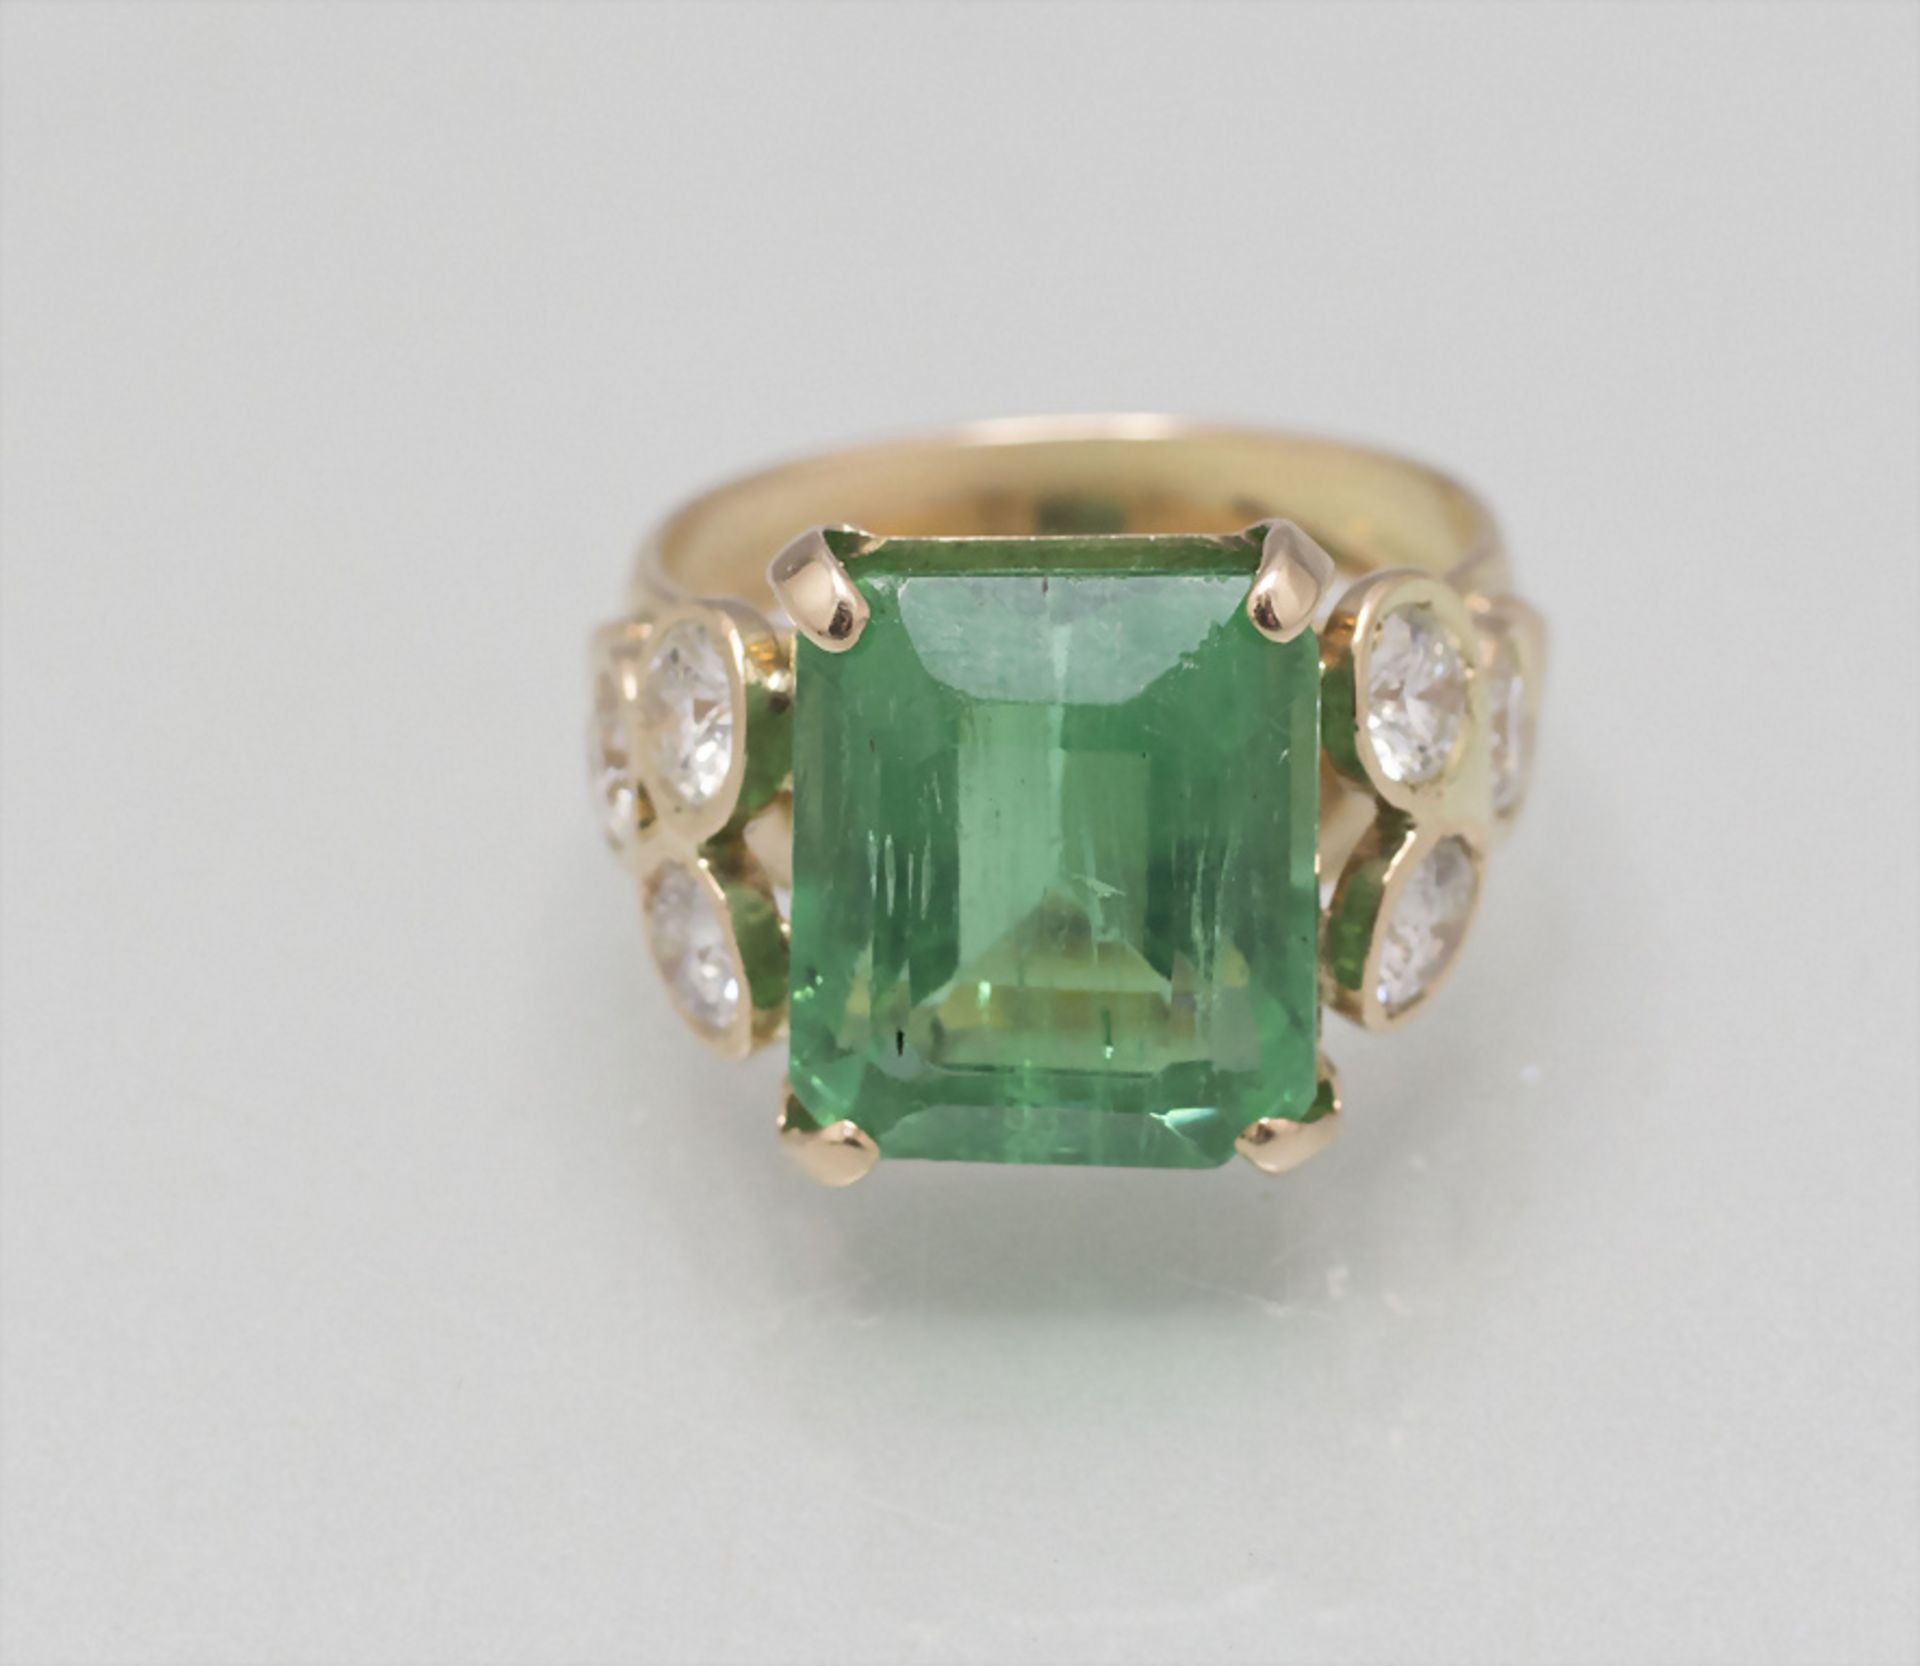 Damenring mit Smaragd und Diamanten / A ladies 14 ct gold ring with emerald and diamonds - Bild 3 aus 3